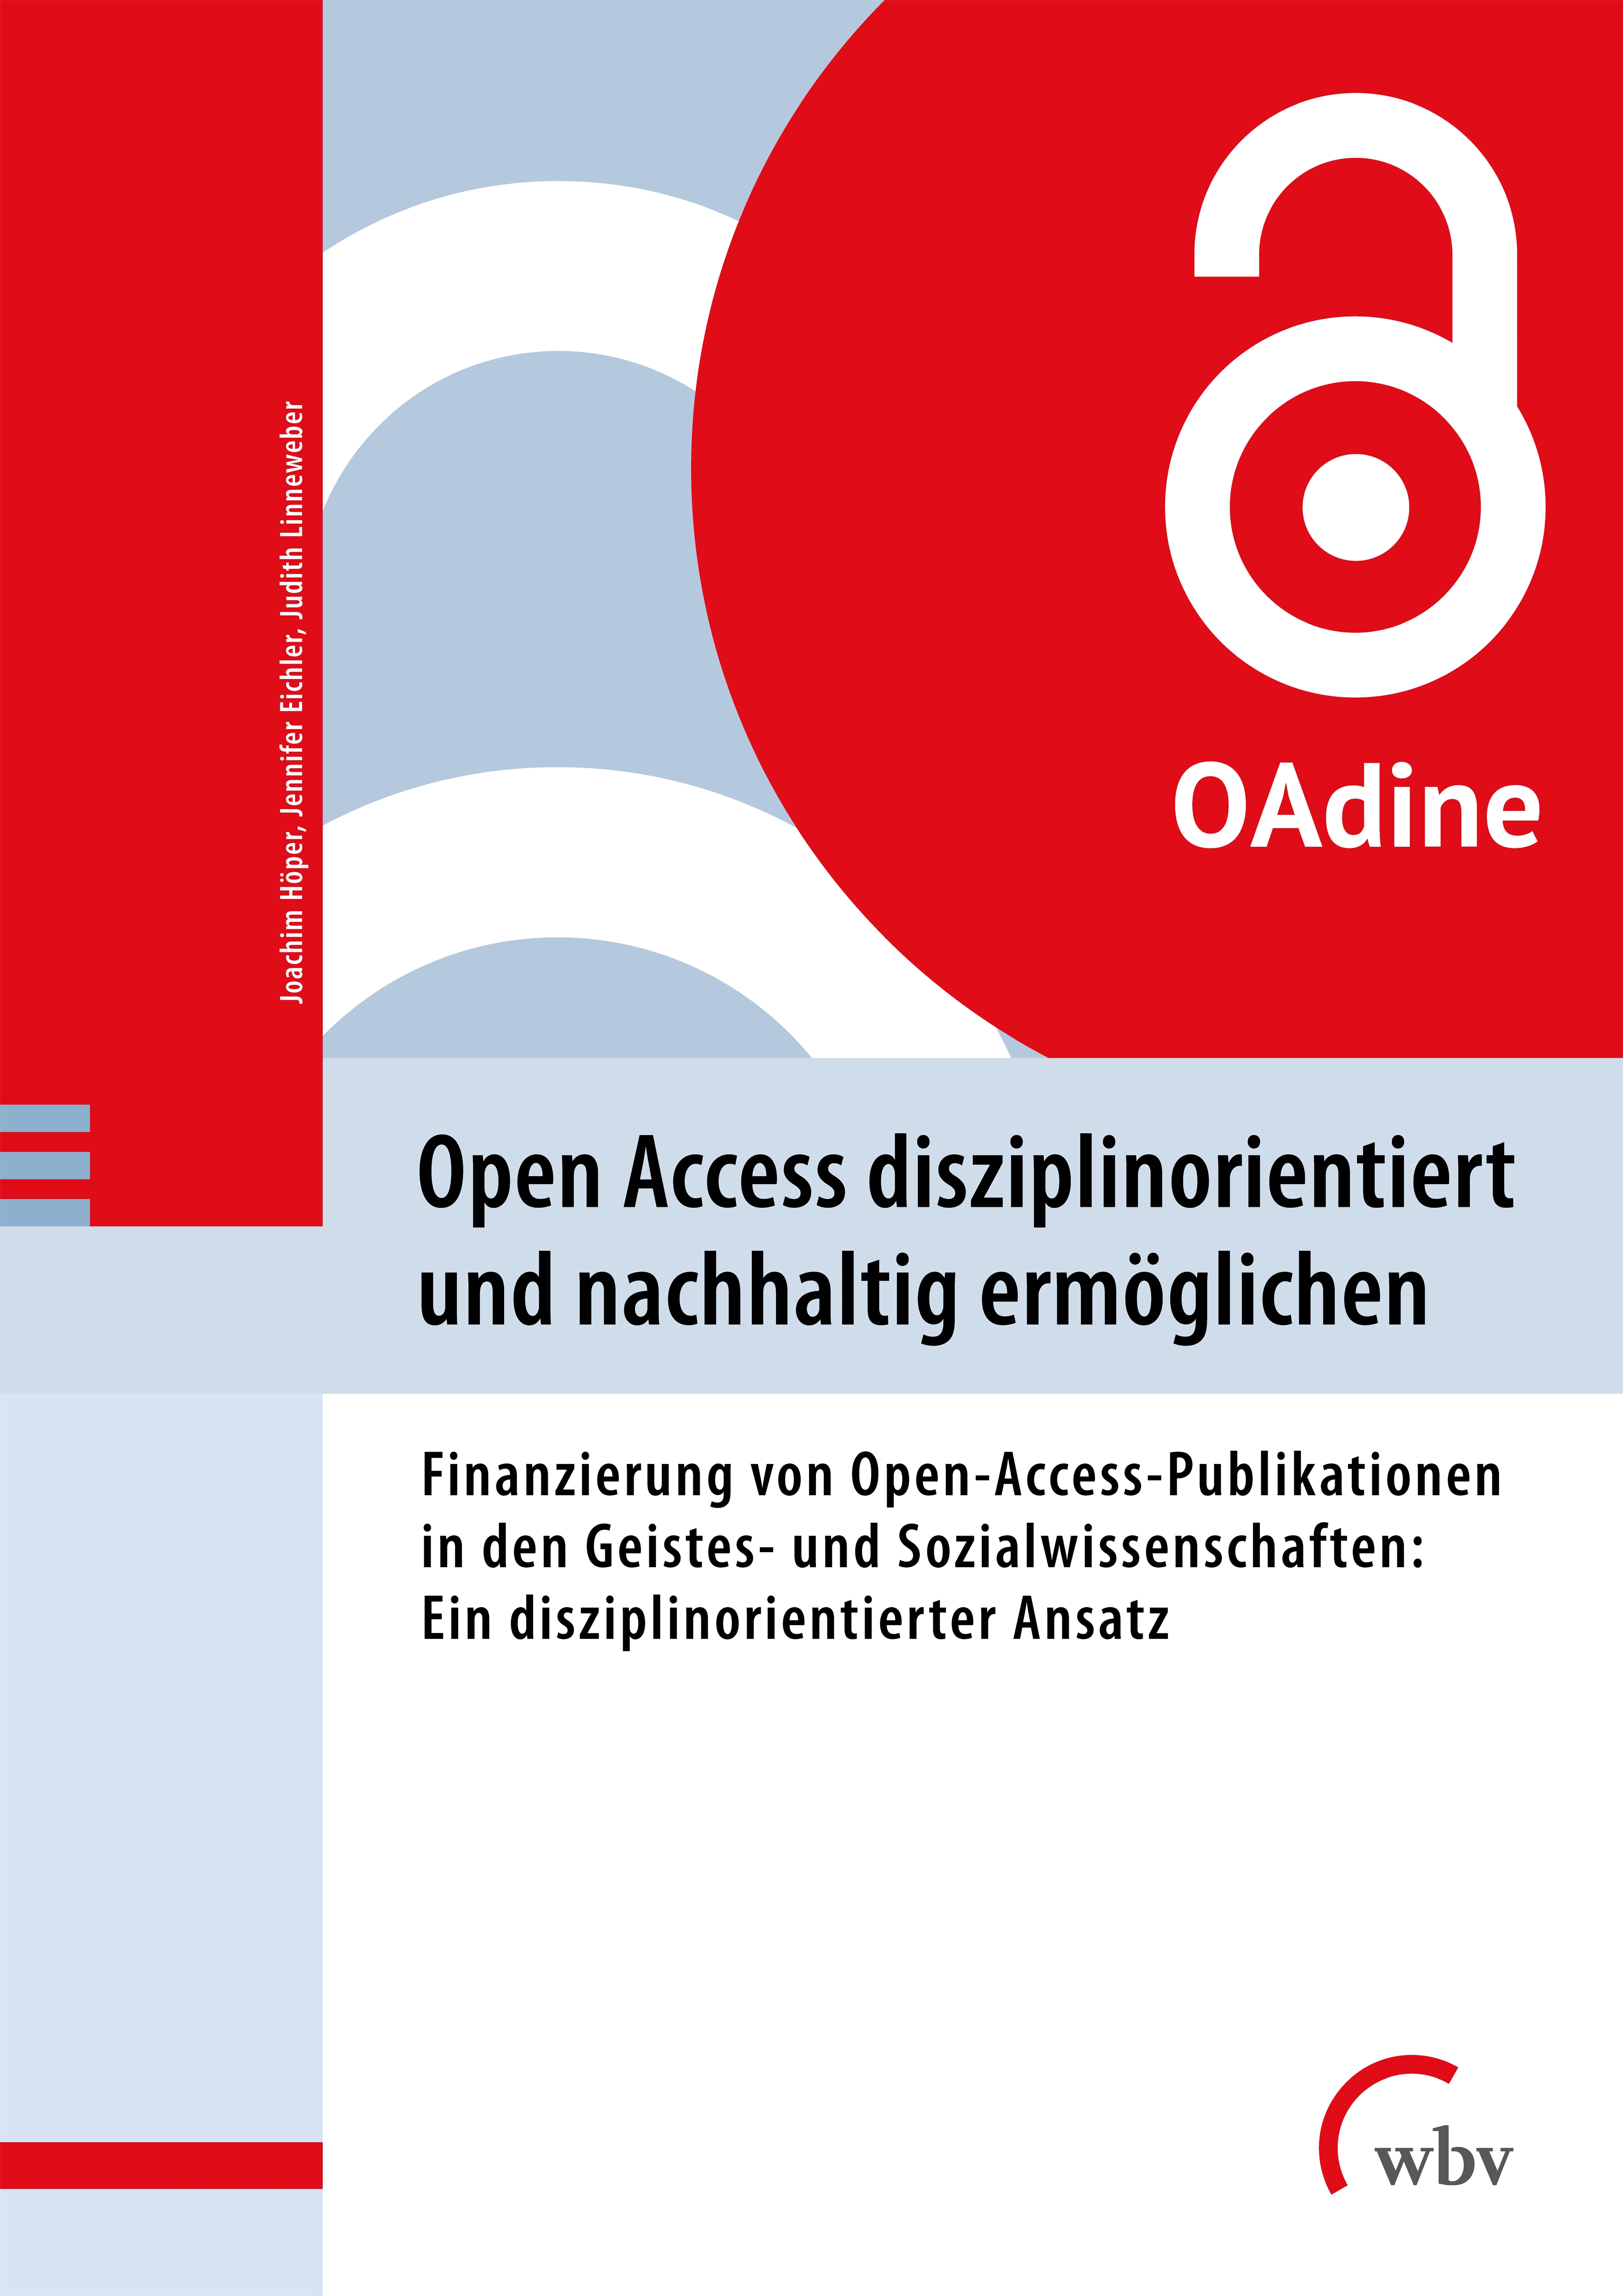 Open Access disziplinorientiert und nachhaltig ermöglichen